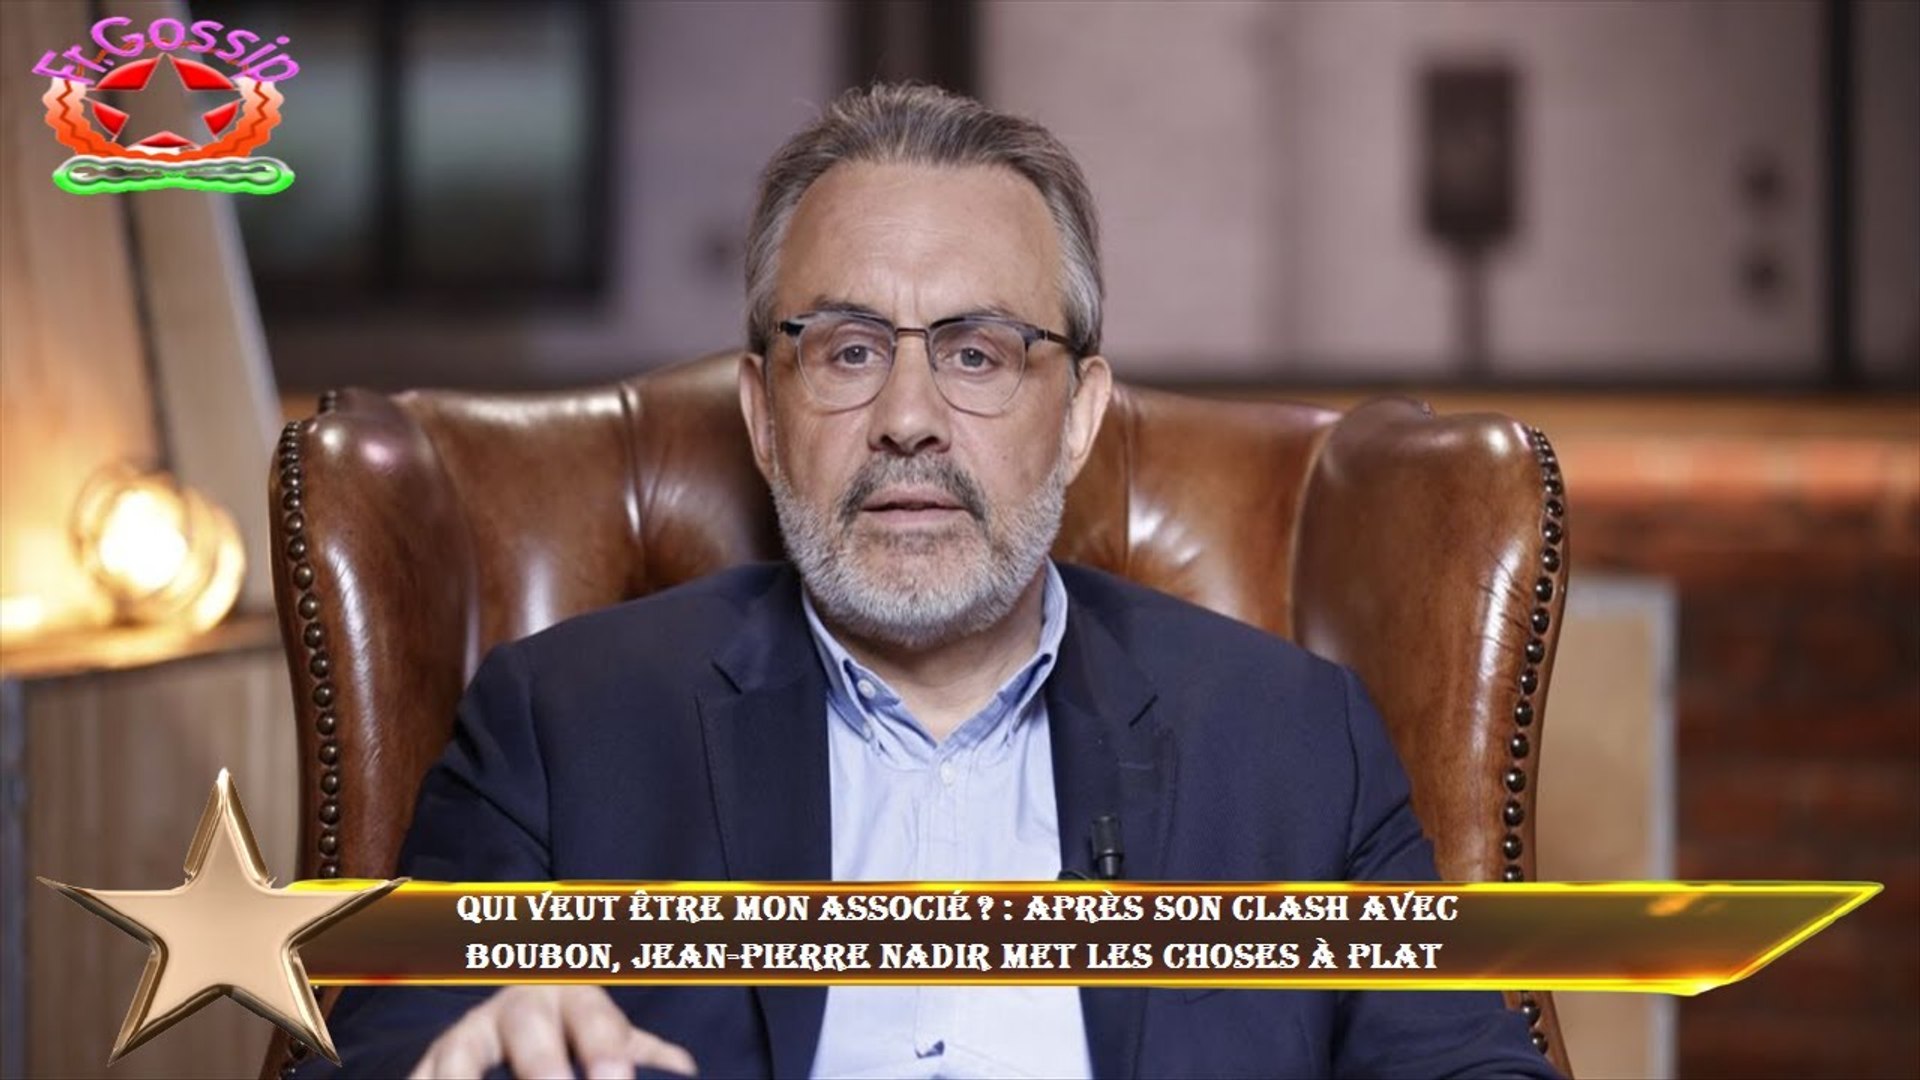 Qui veut être mon associé ? : après son clash avec Boubon, Jean-Pierre  Nadir met les choses à plat - Vidéo Dailymotion